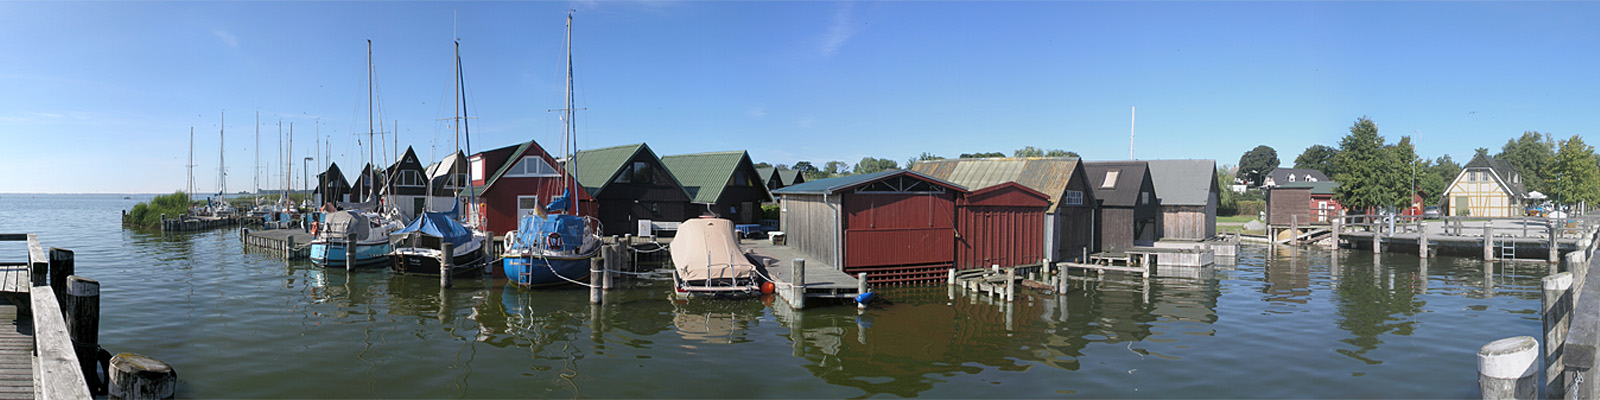 Panorama: Althagen Bootshäuser - Motivnummer: fdz-ahr-08